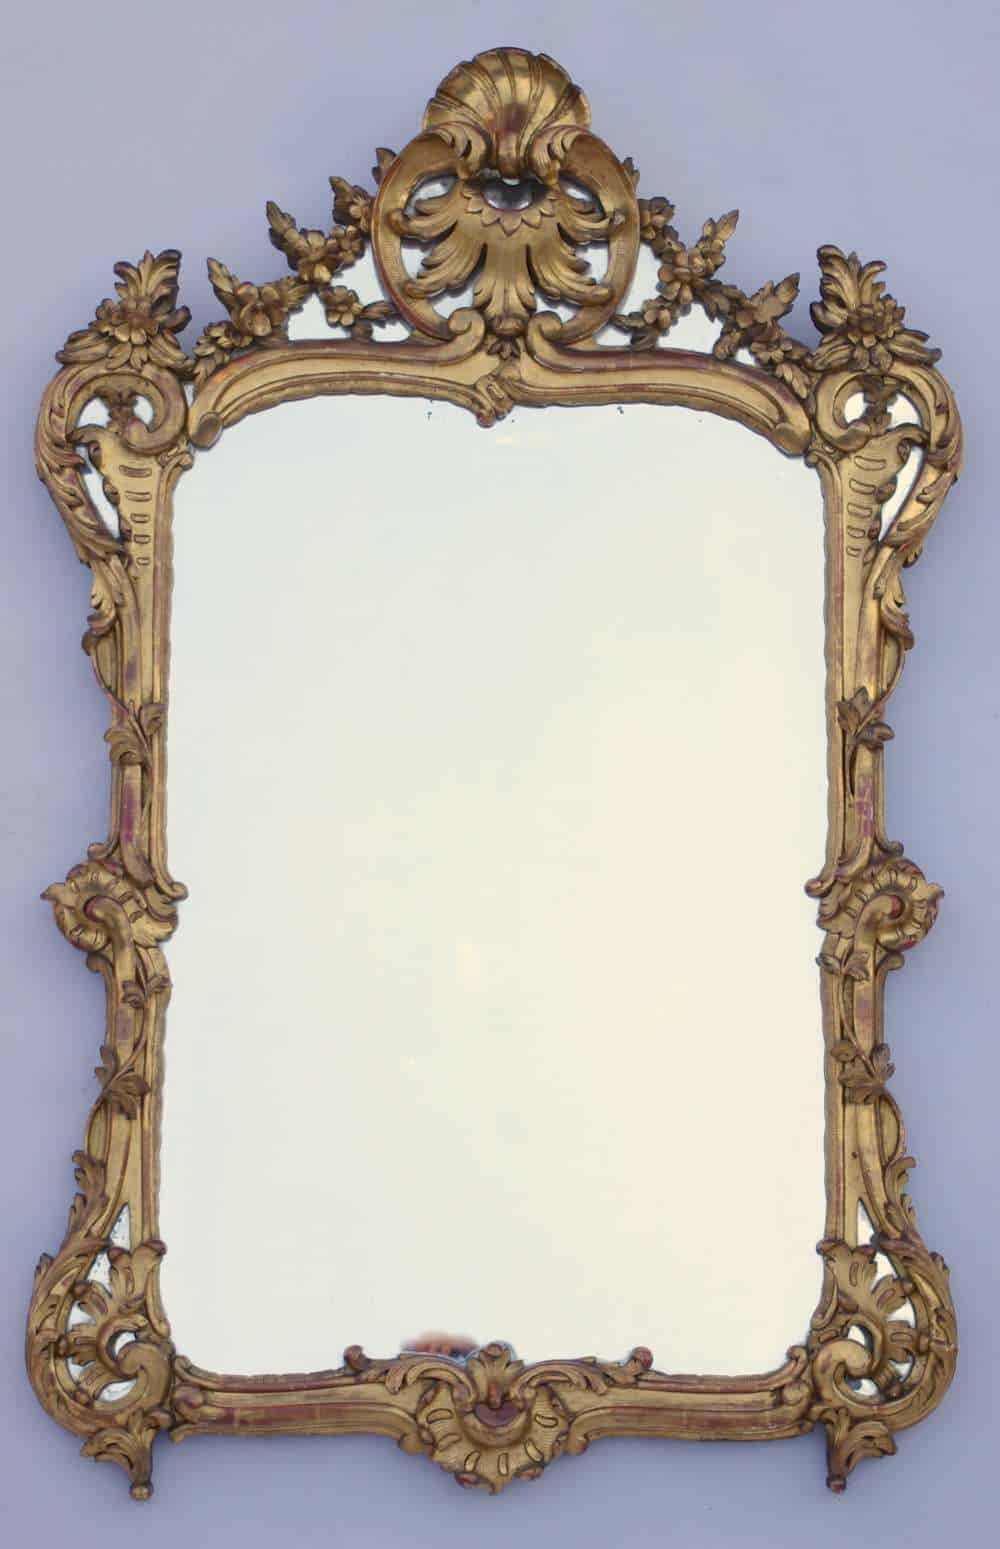 Miroir Louis XV à parecloses de bois doré